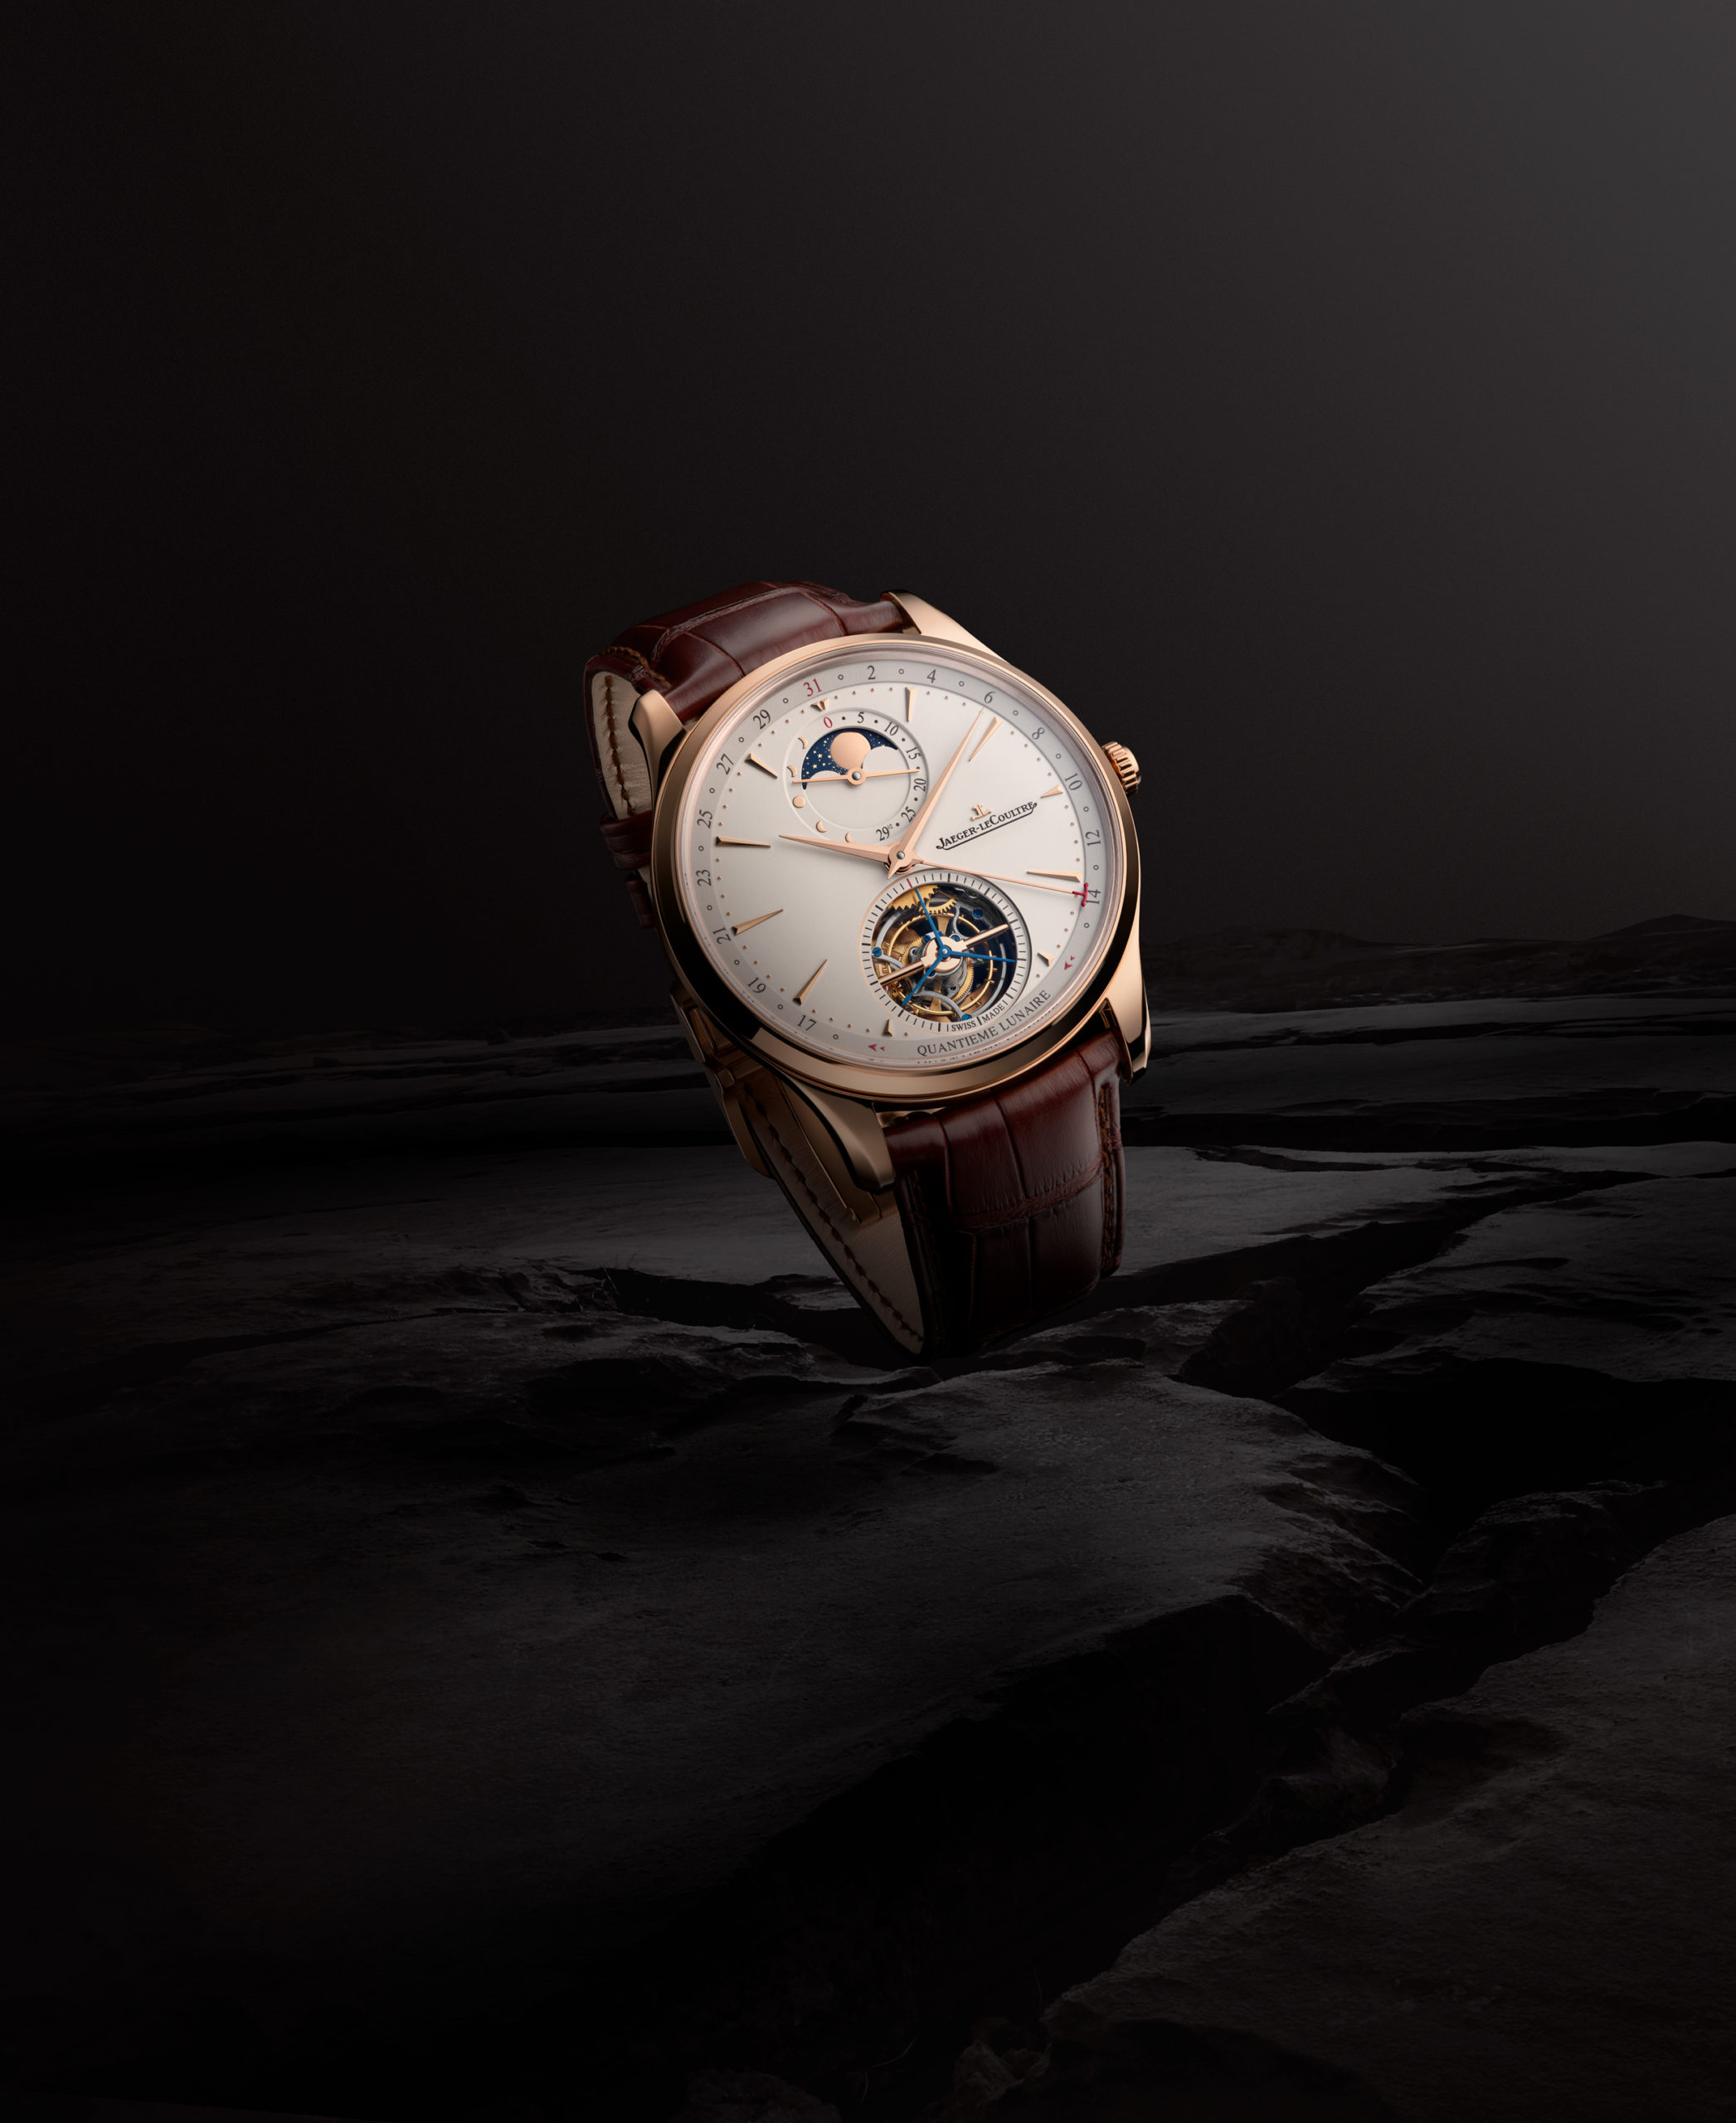 積家隆重推出全新 MASTER ULTRA THIN 超薄大師系列腕錶 結合月相顯示與陀飛輪的新品 ABTW編輯之選 腕表發佈 General 